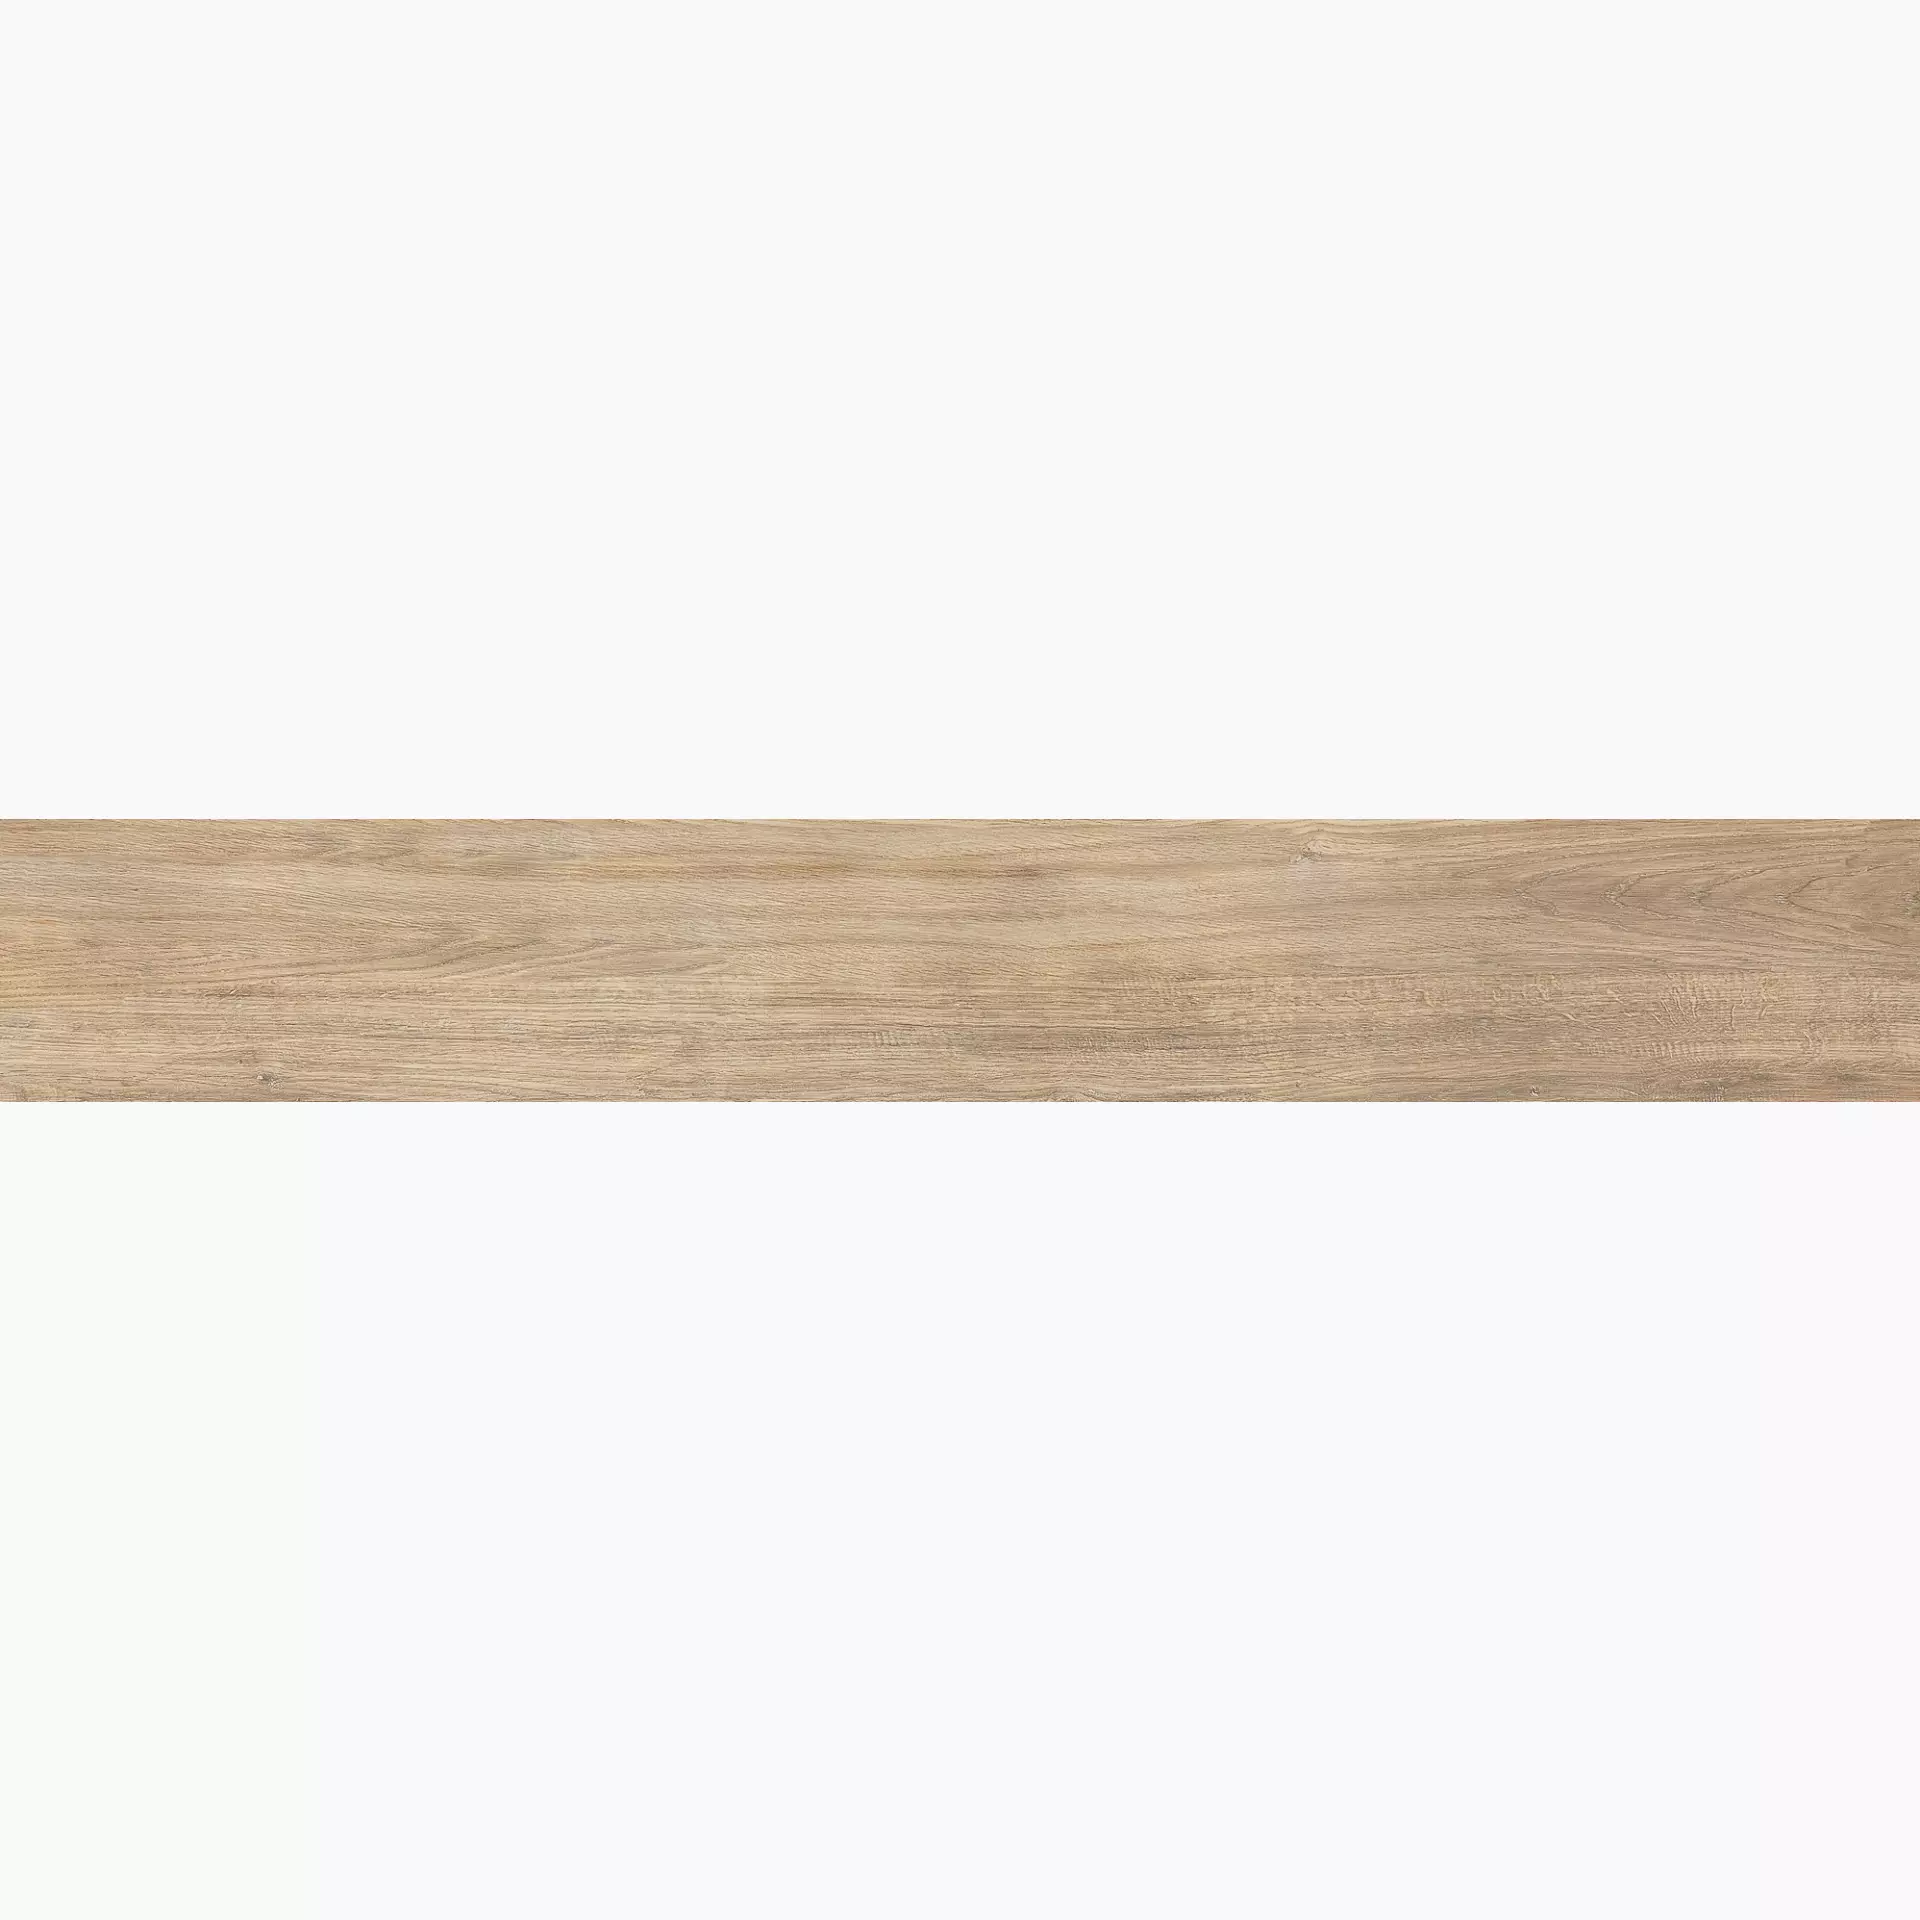 Florim Selection Oak Cream Oak Naturale – Matt 737648 26,5x180cm rectified 9mm